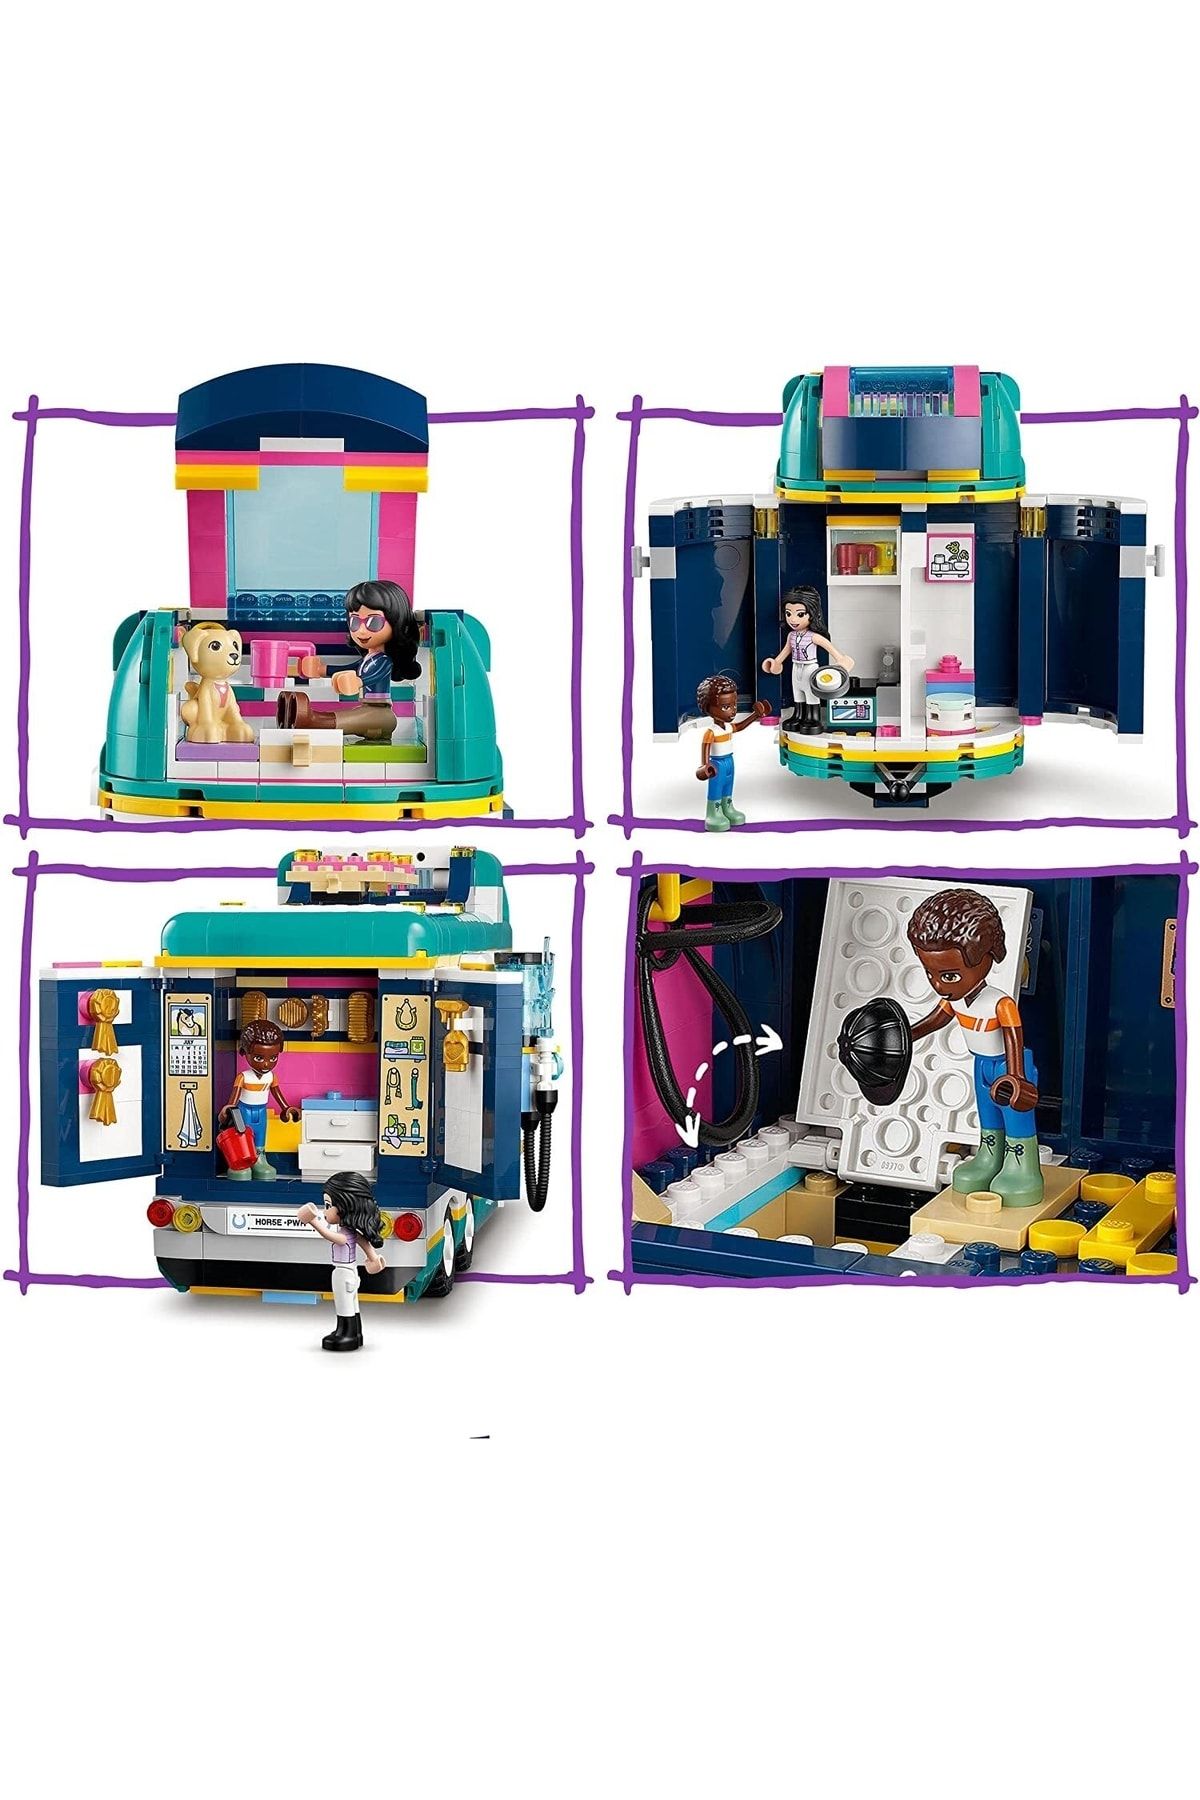 LEGO لگو تریلر نمایش اسب دوستان 41722 سواری با تجهیزات اسب سواری برای کودکان 8 سال به بالا